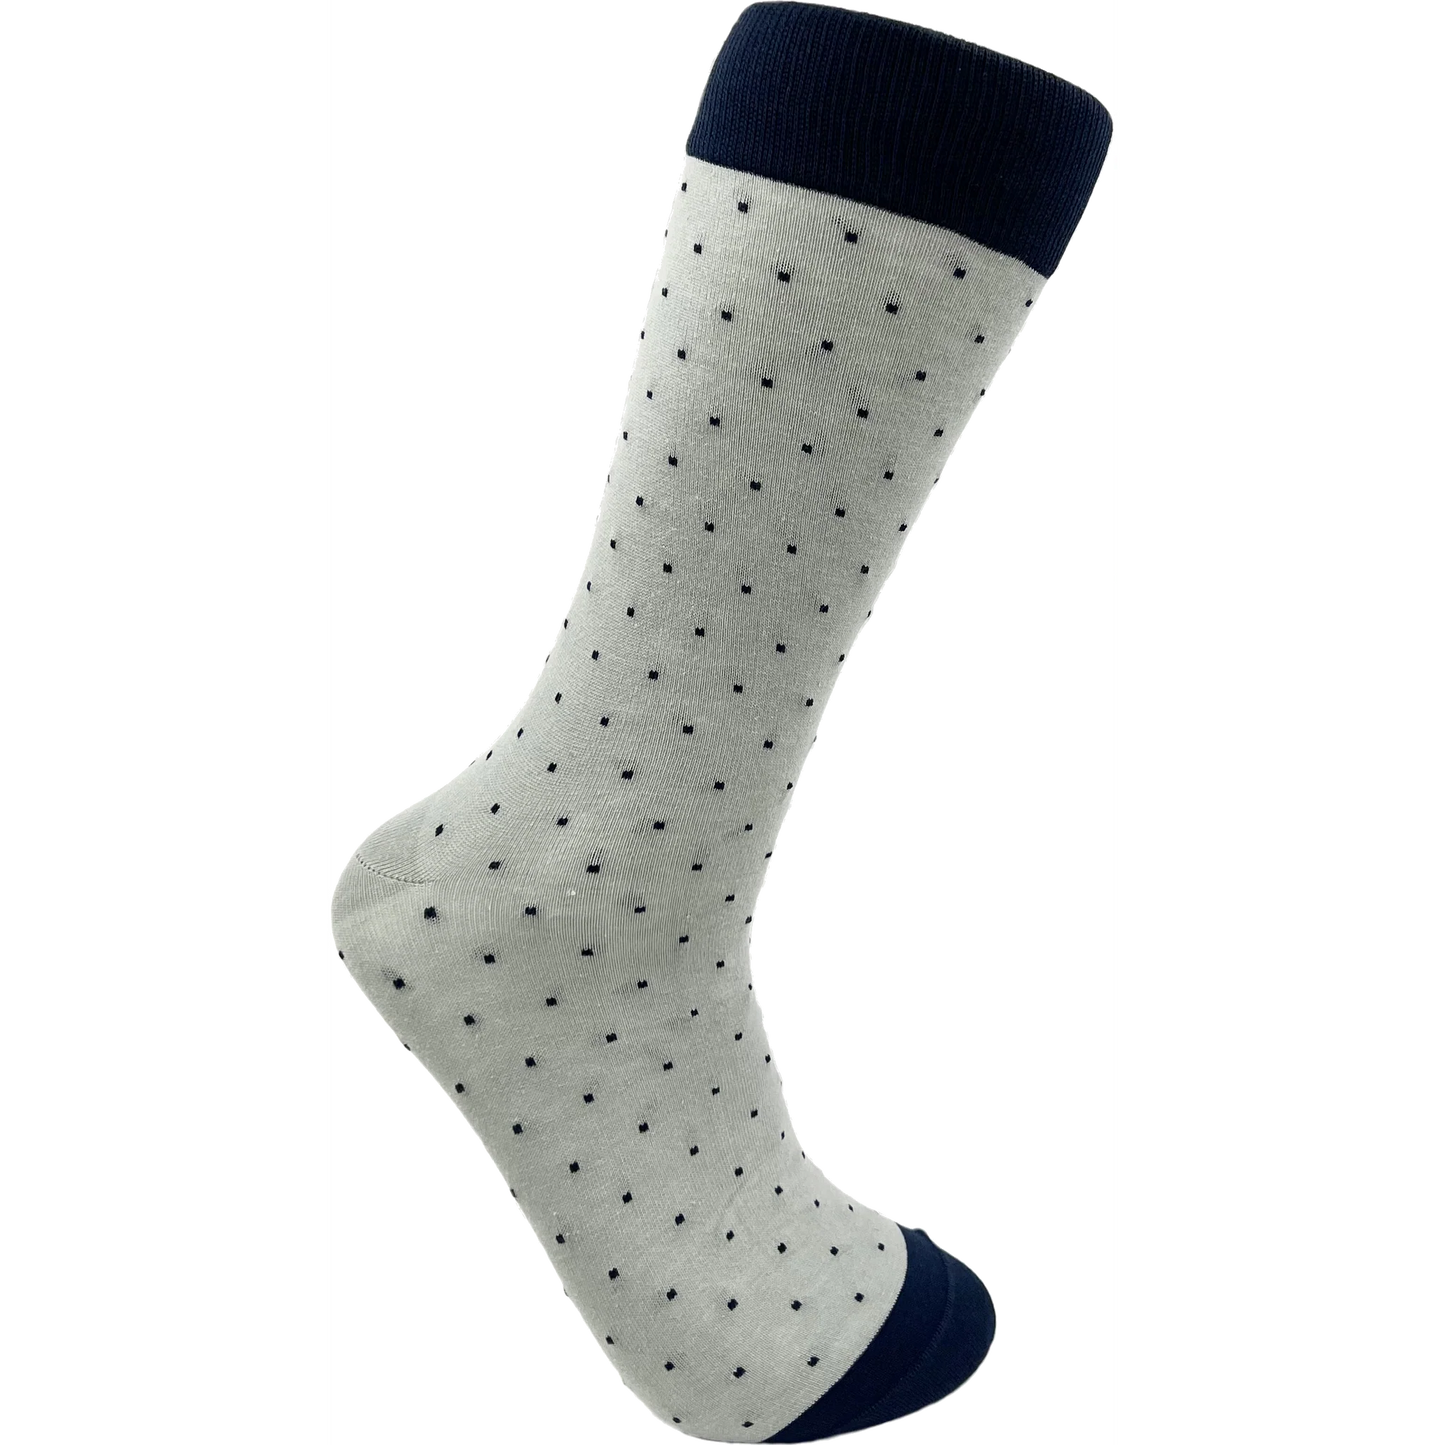 The Dot Socks in Navy & Grey